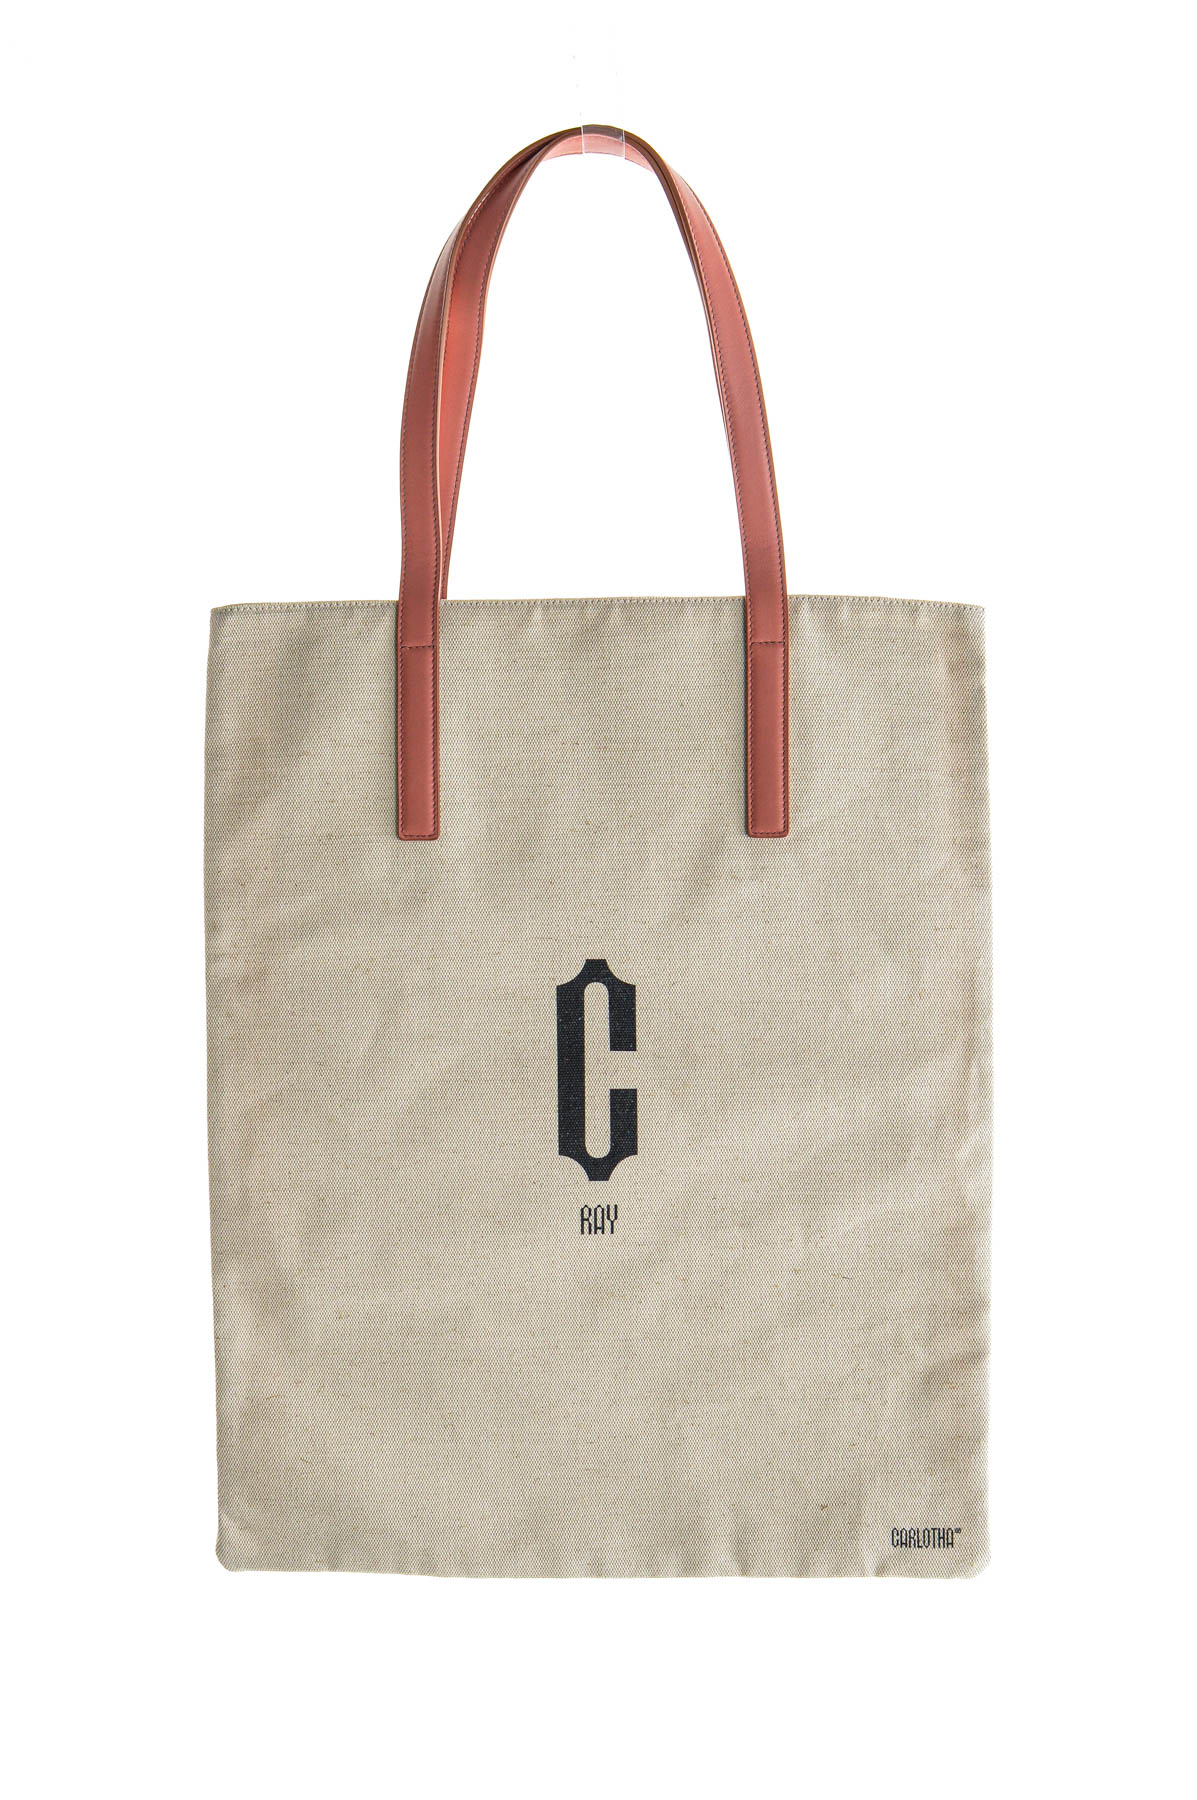 Τσάντα για ψώνια - Carlotha Ray - 0